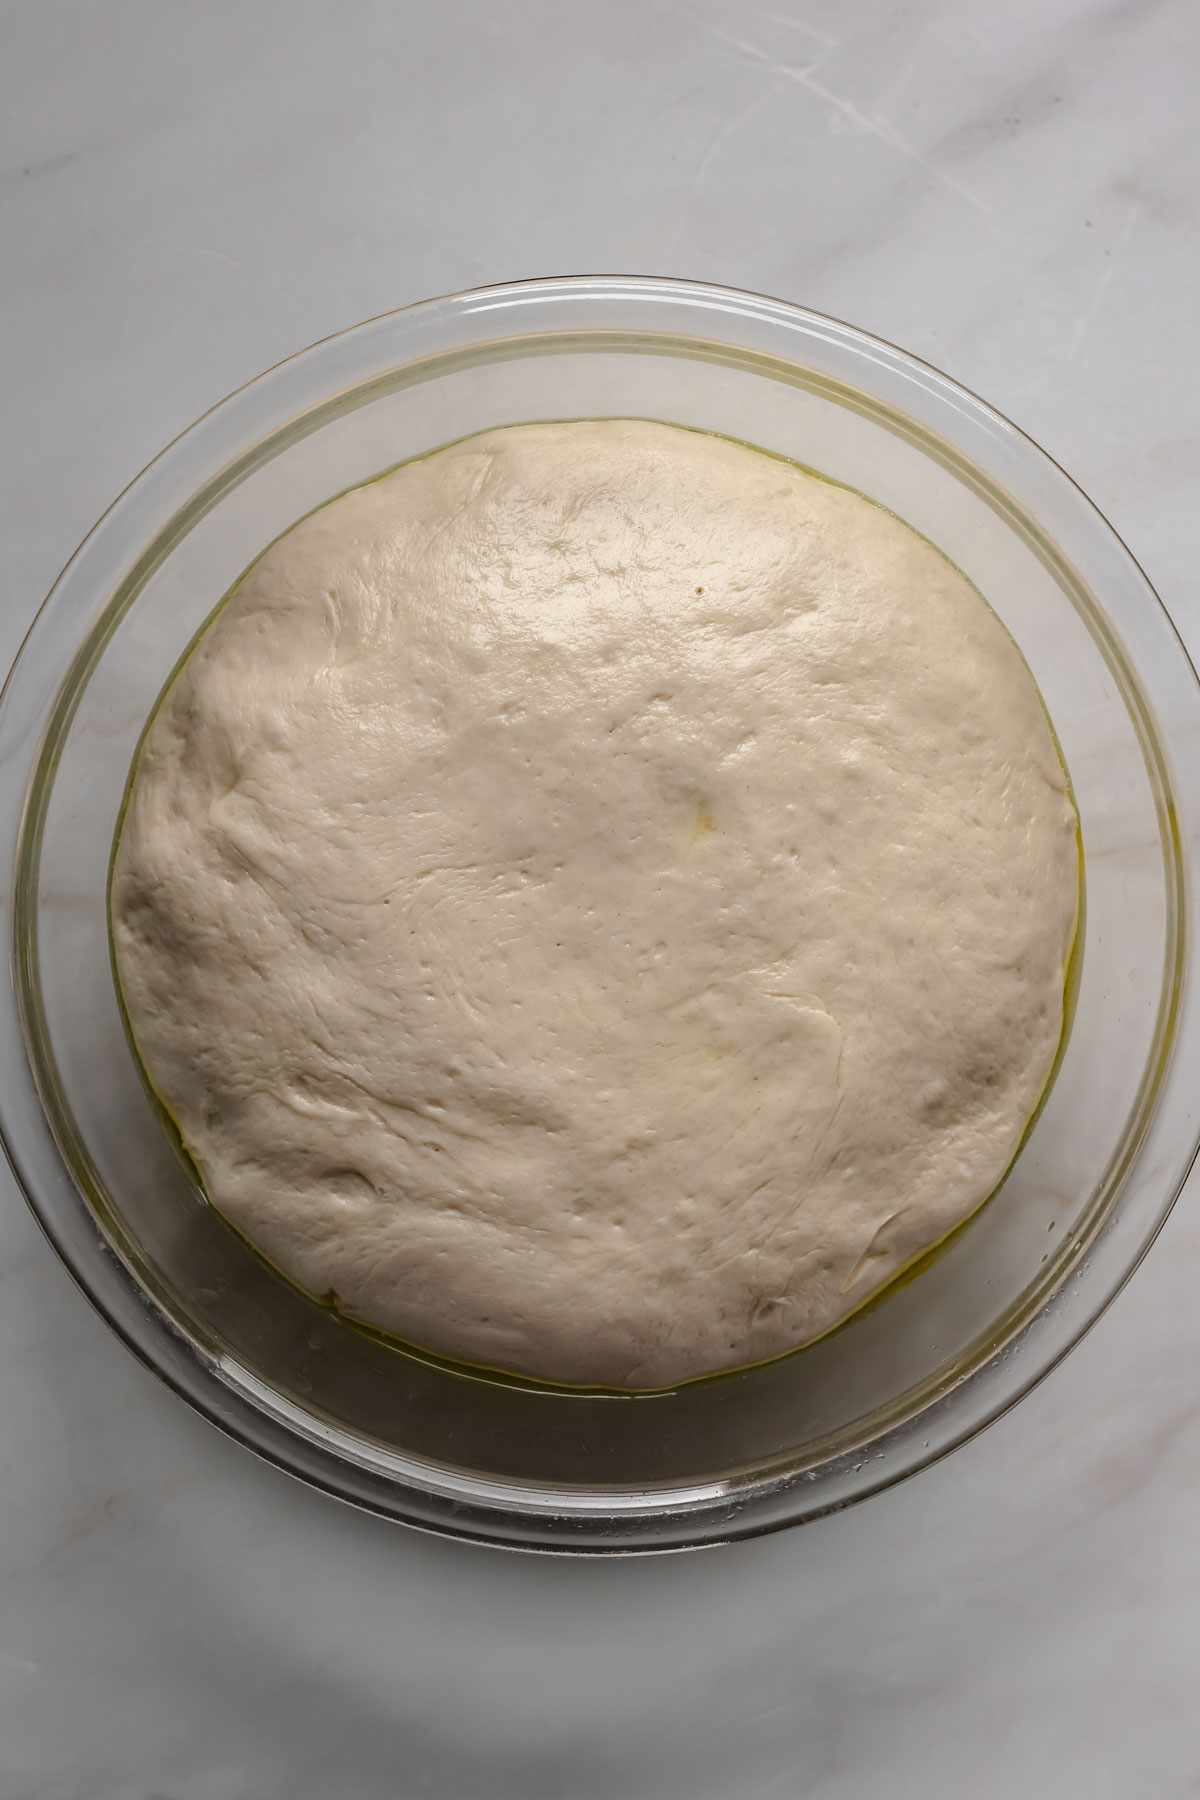 Risen dough filling a bowl.